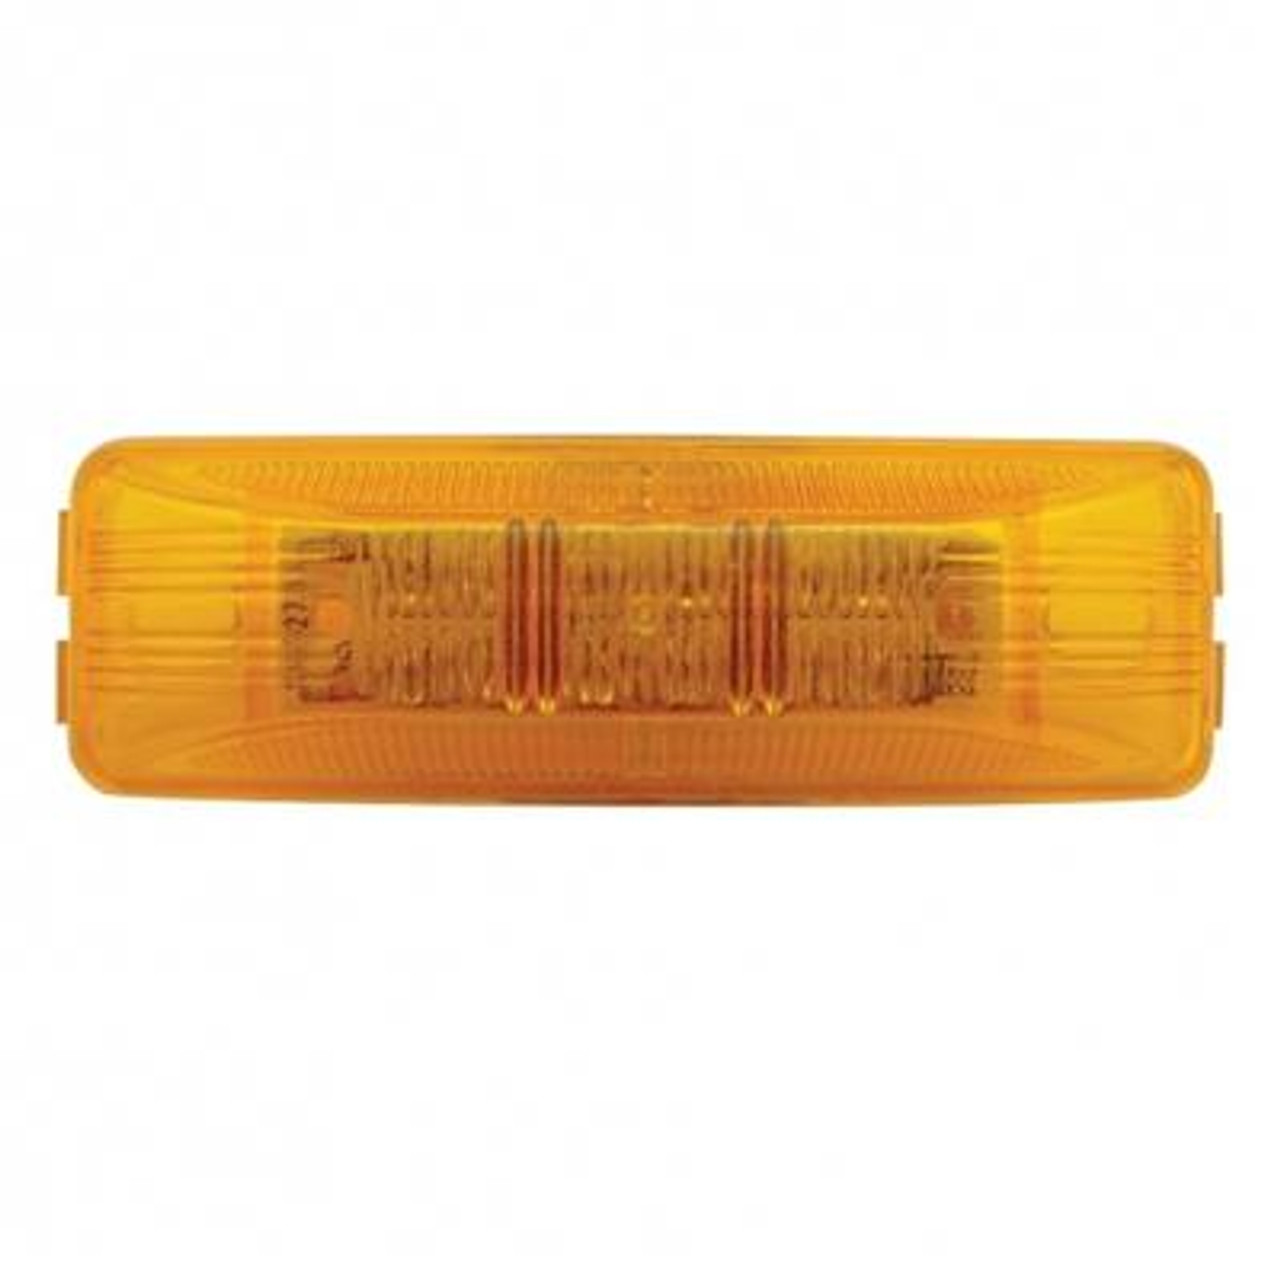 12 LED Rectangular Light (Clearance/Marker) - Amber LED/Amber Lens